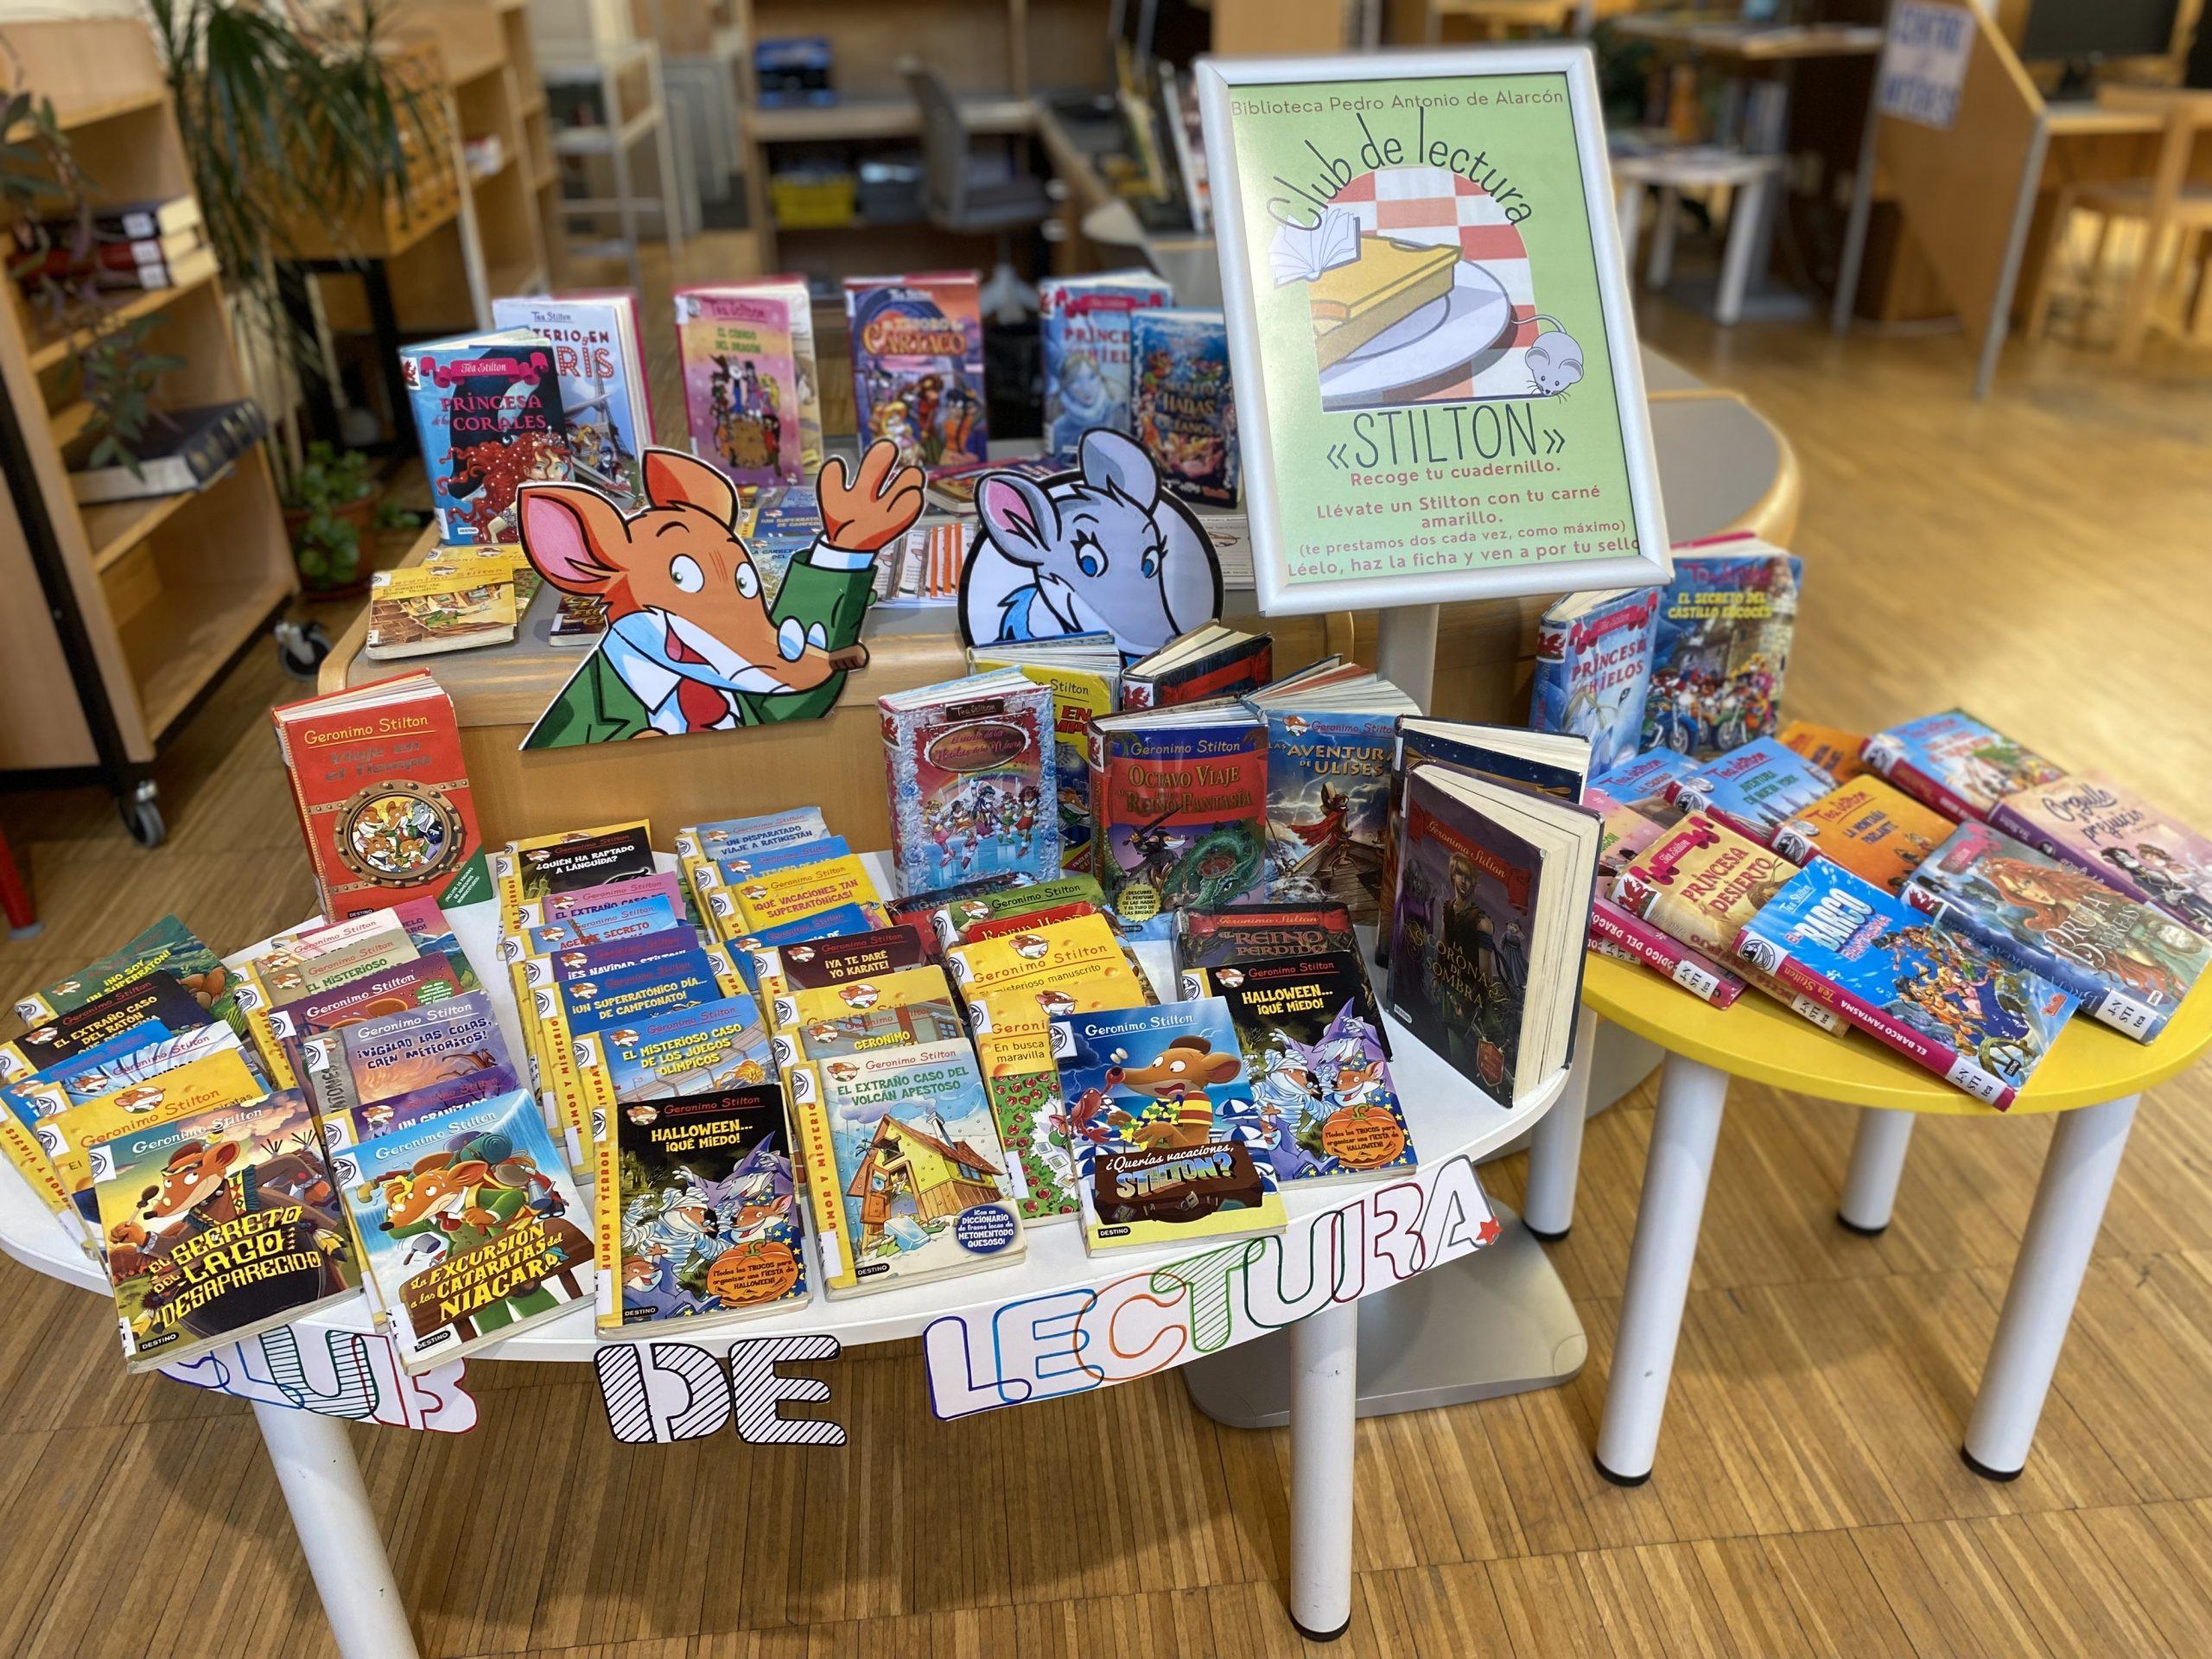 La Biblioteca pone en marcha el Club de Lectura Stilton para fomentar el  hábito lector en niños de 6 a 12 años - San Lorenzo de El Escorial